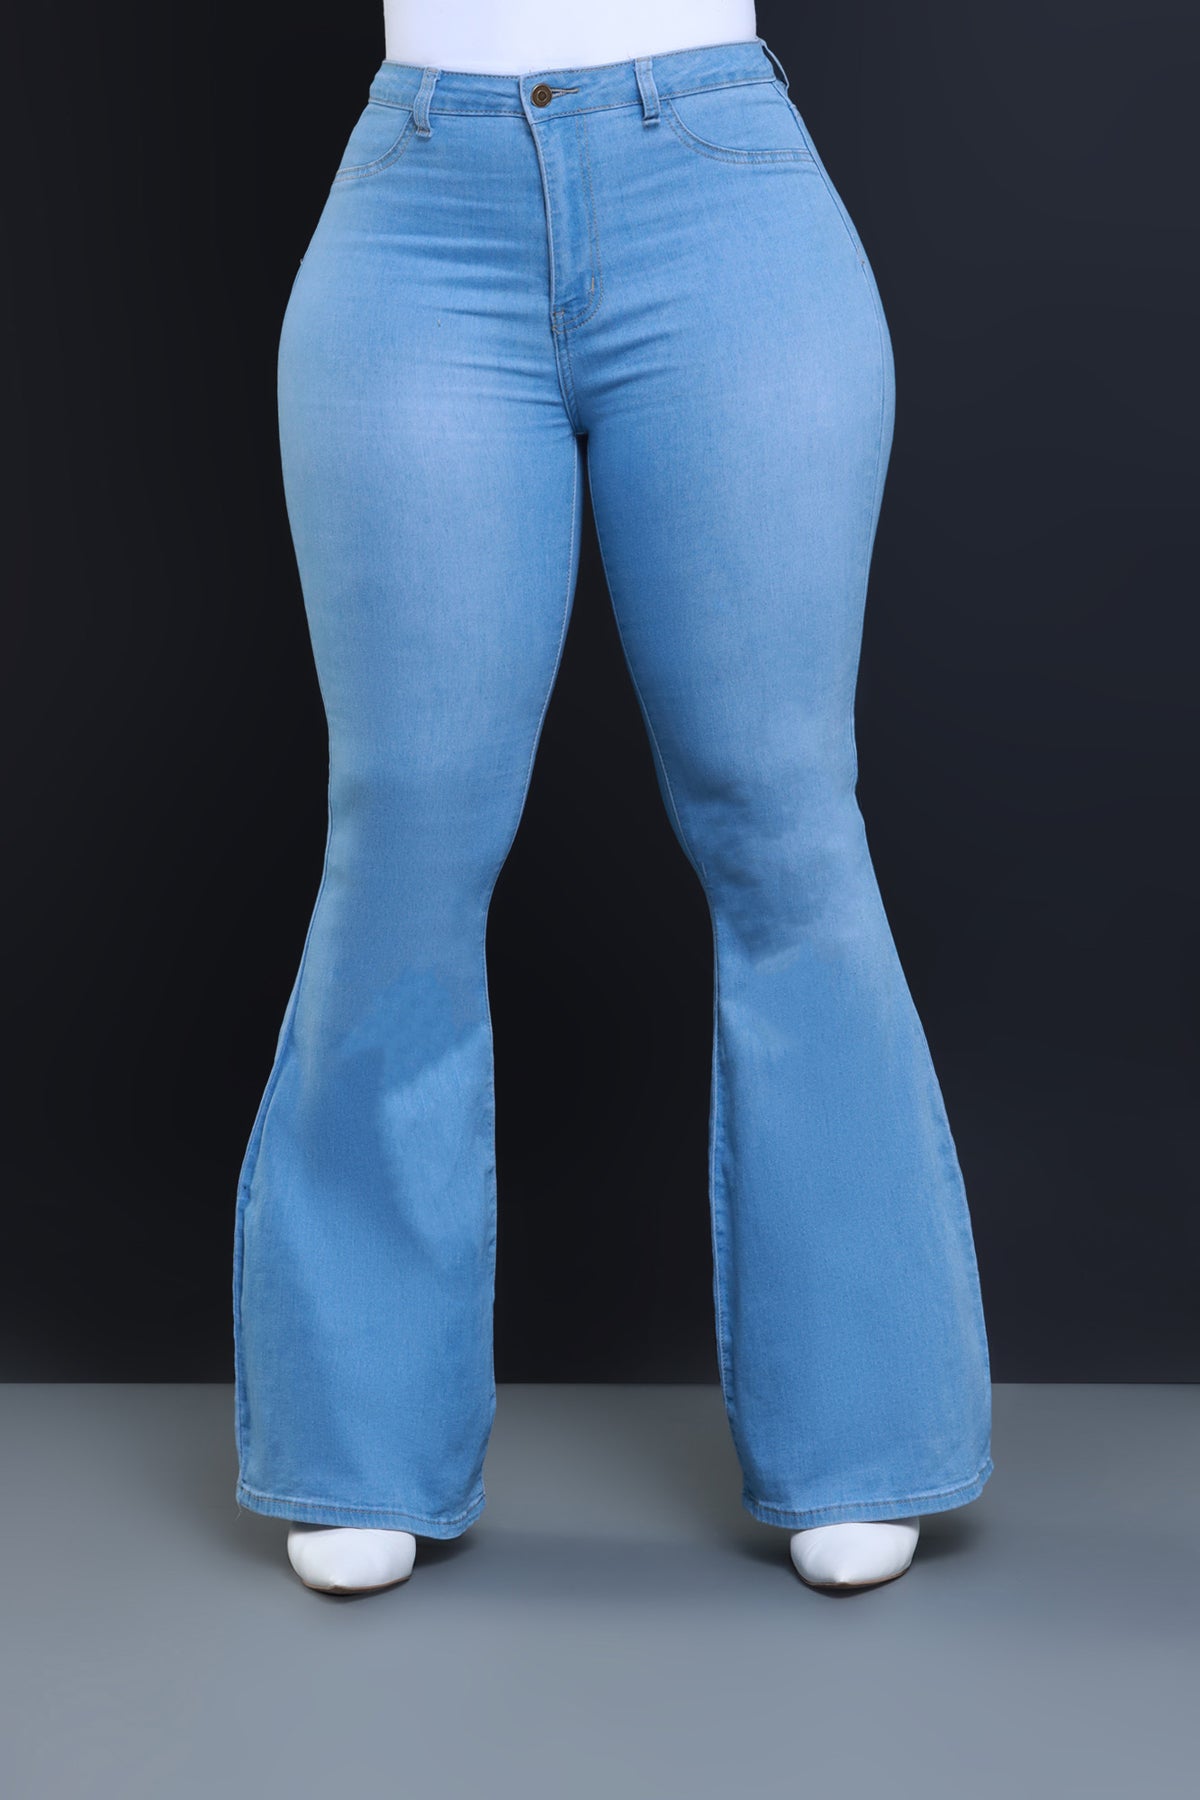 Buy Light Blue Bell Bottom jeans for women for women